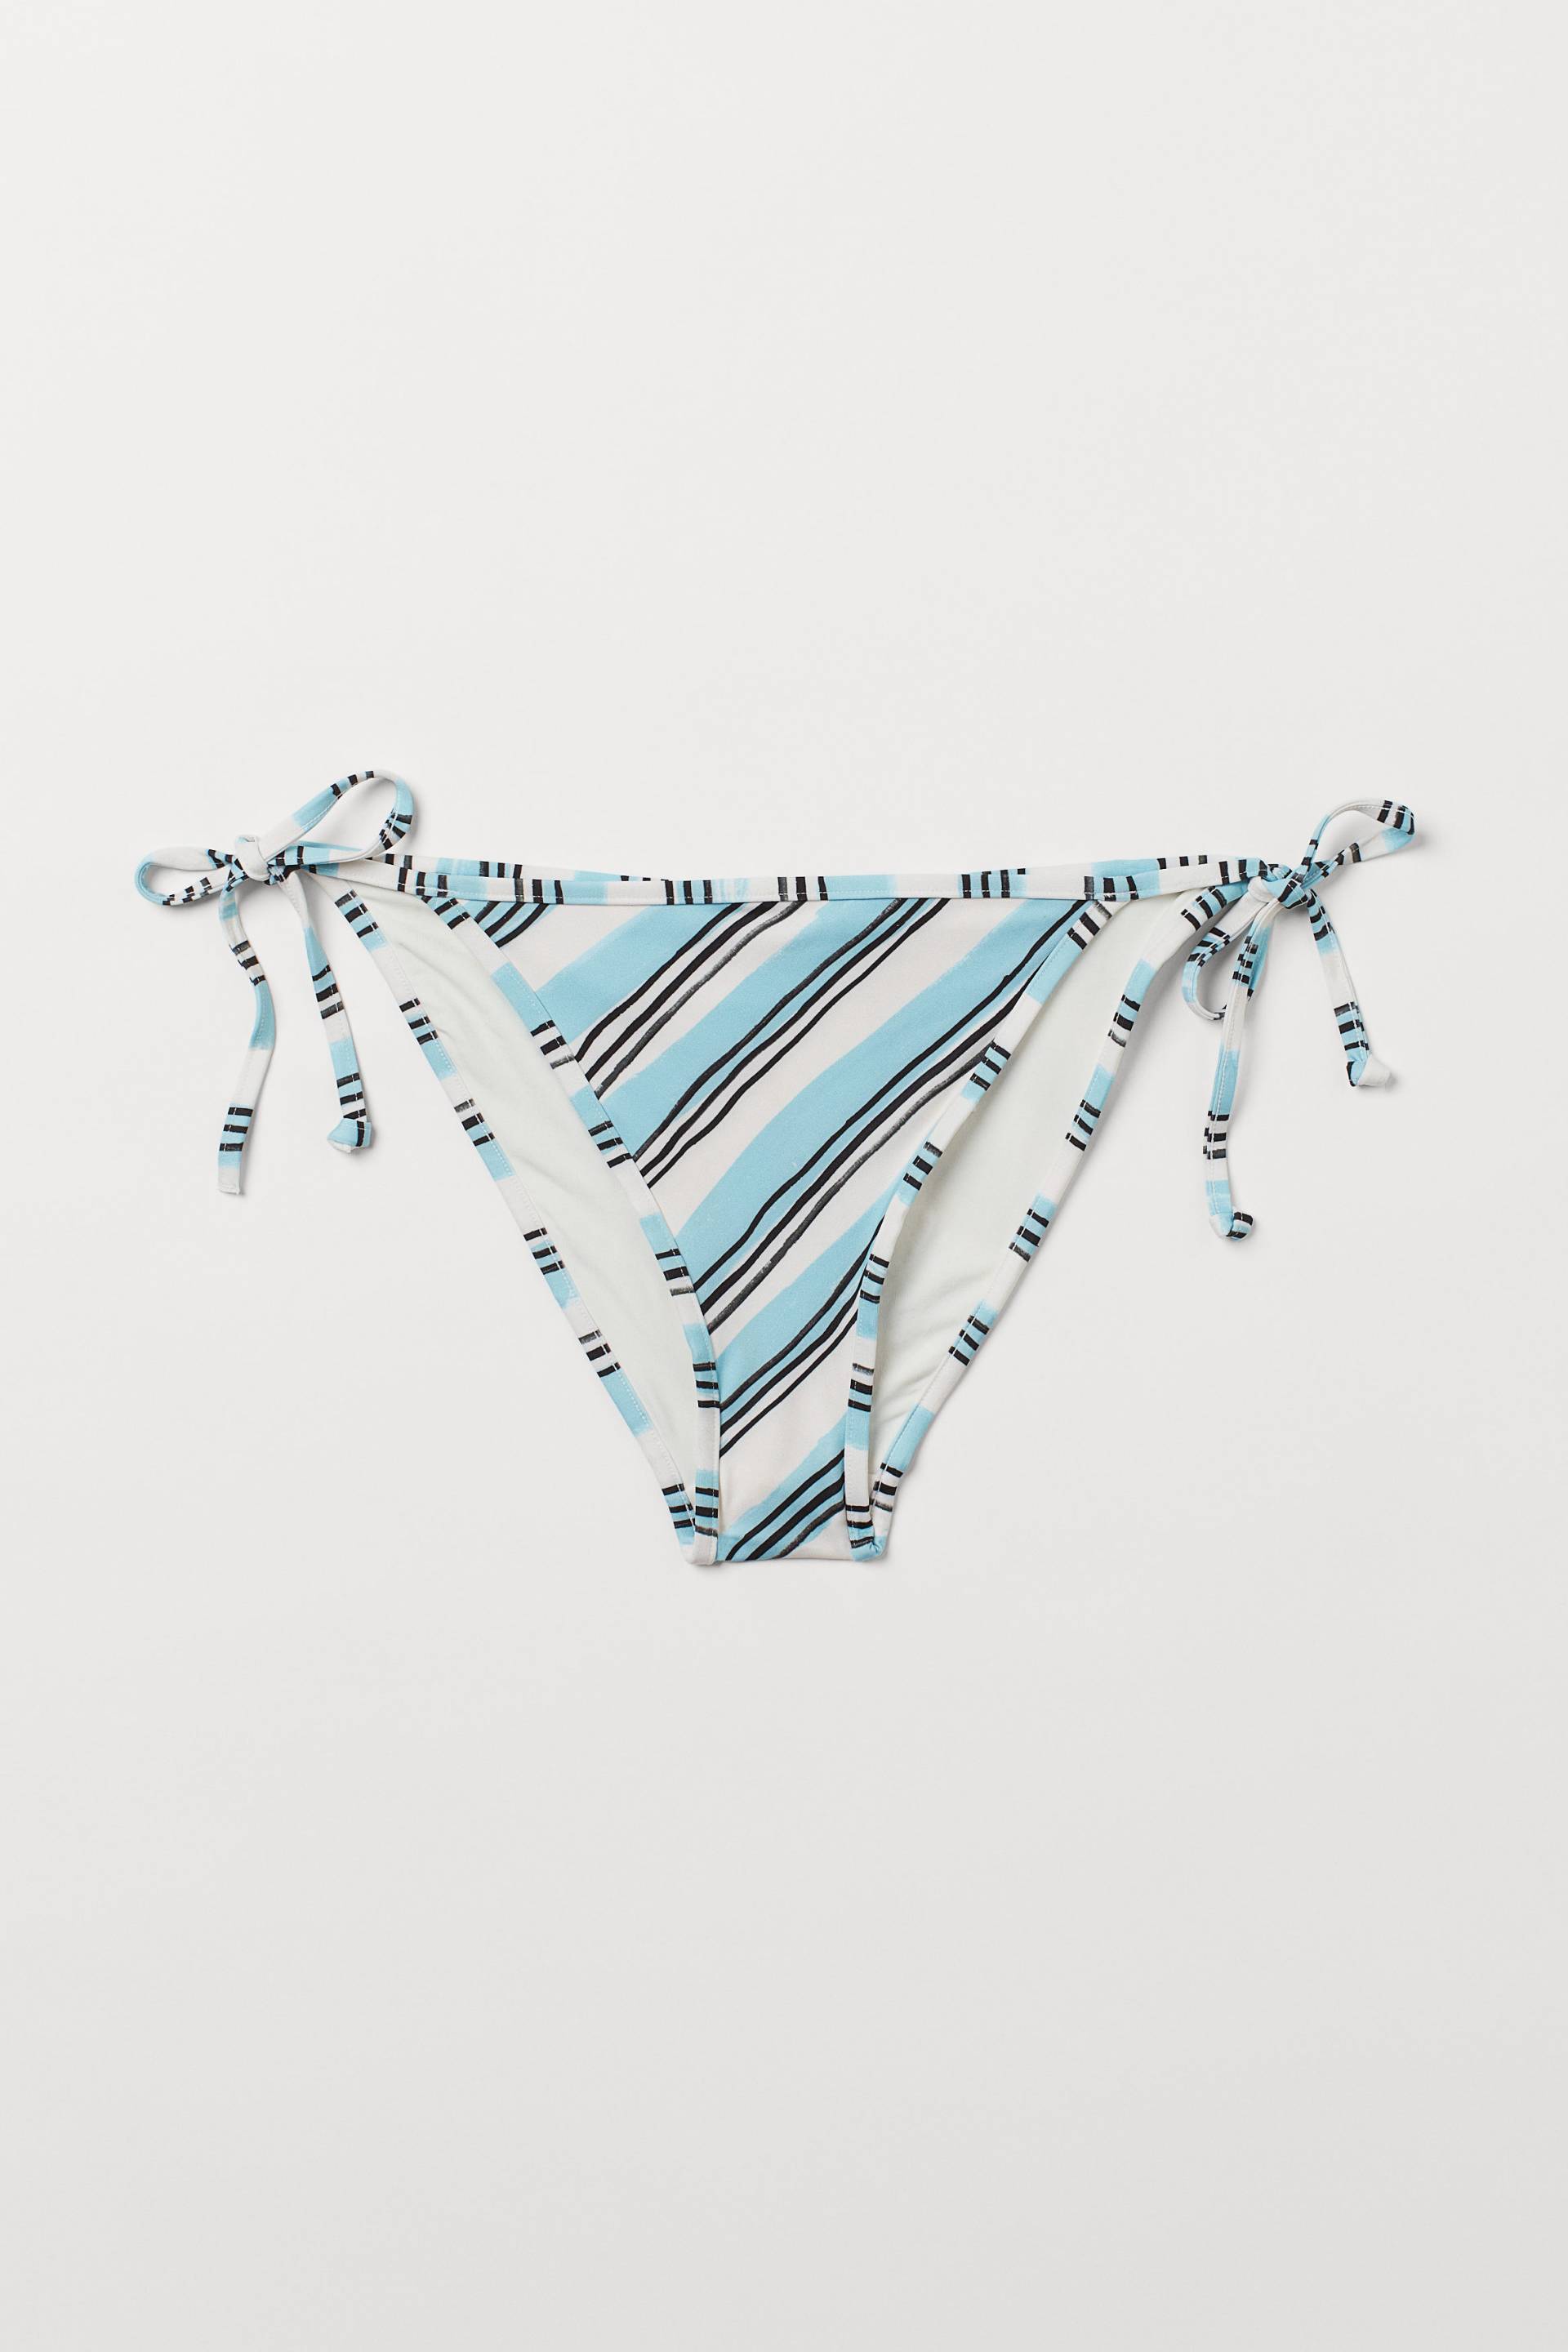 H&M Tie-Tanga Bikinihose Weiß/Türkis gestreift, Bikini-Unterteil in Größe 44. Farbe: White/turquoise striped von H&M